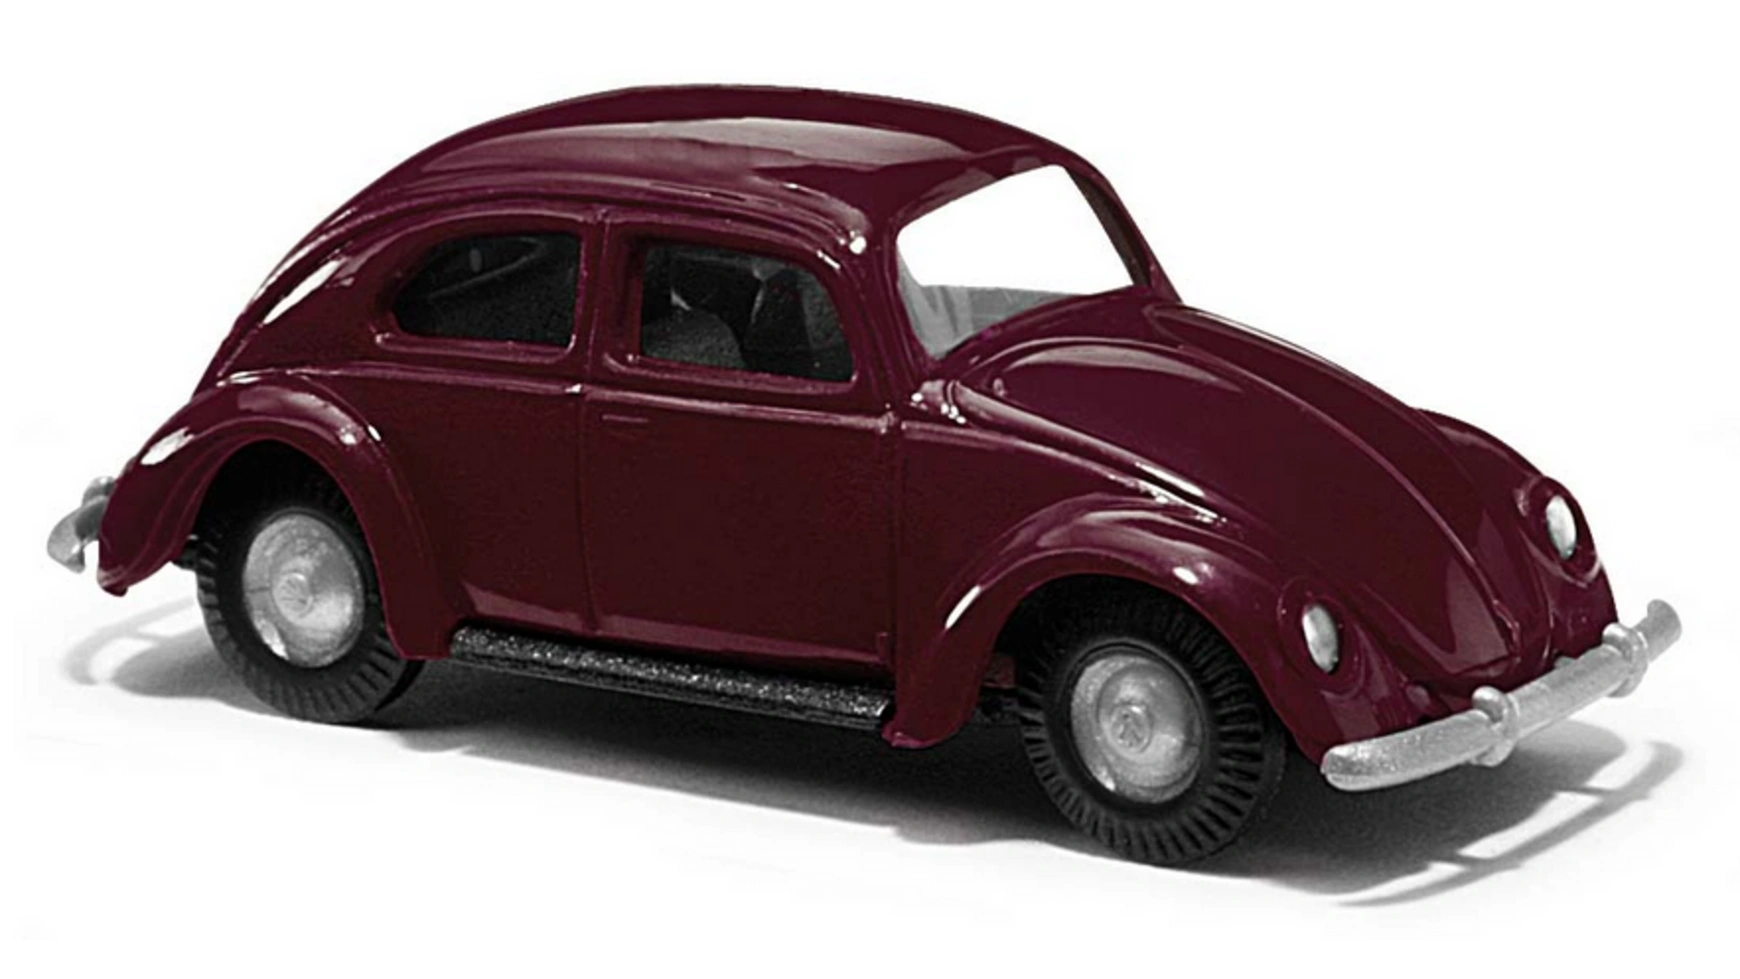 Busch Modellspielwaren 1:87 Комплект: VW Beetle, красный busch modellspielwaren 1 87 vw beetle с овальным окном полицейский 1955 года выпуска